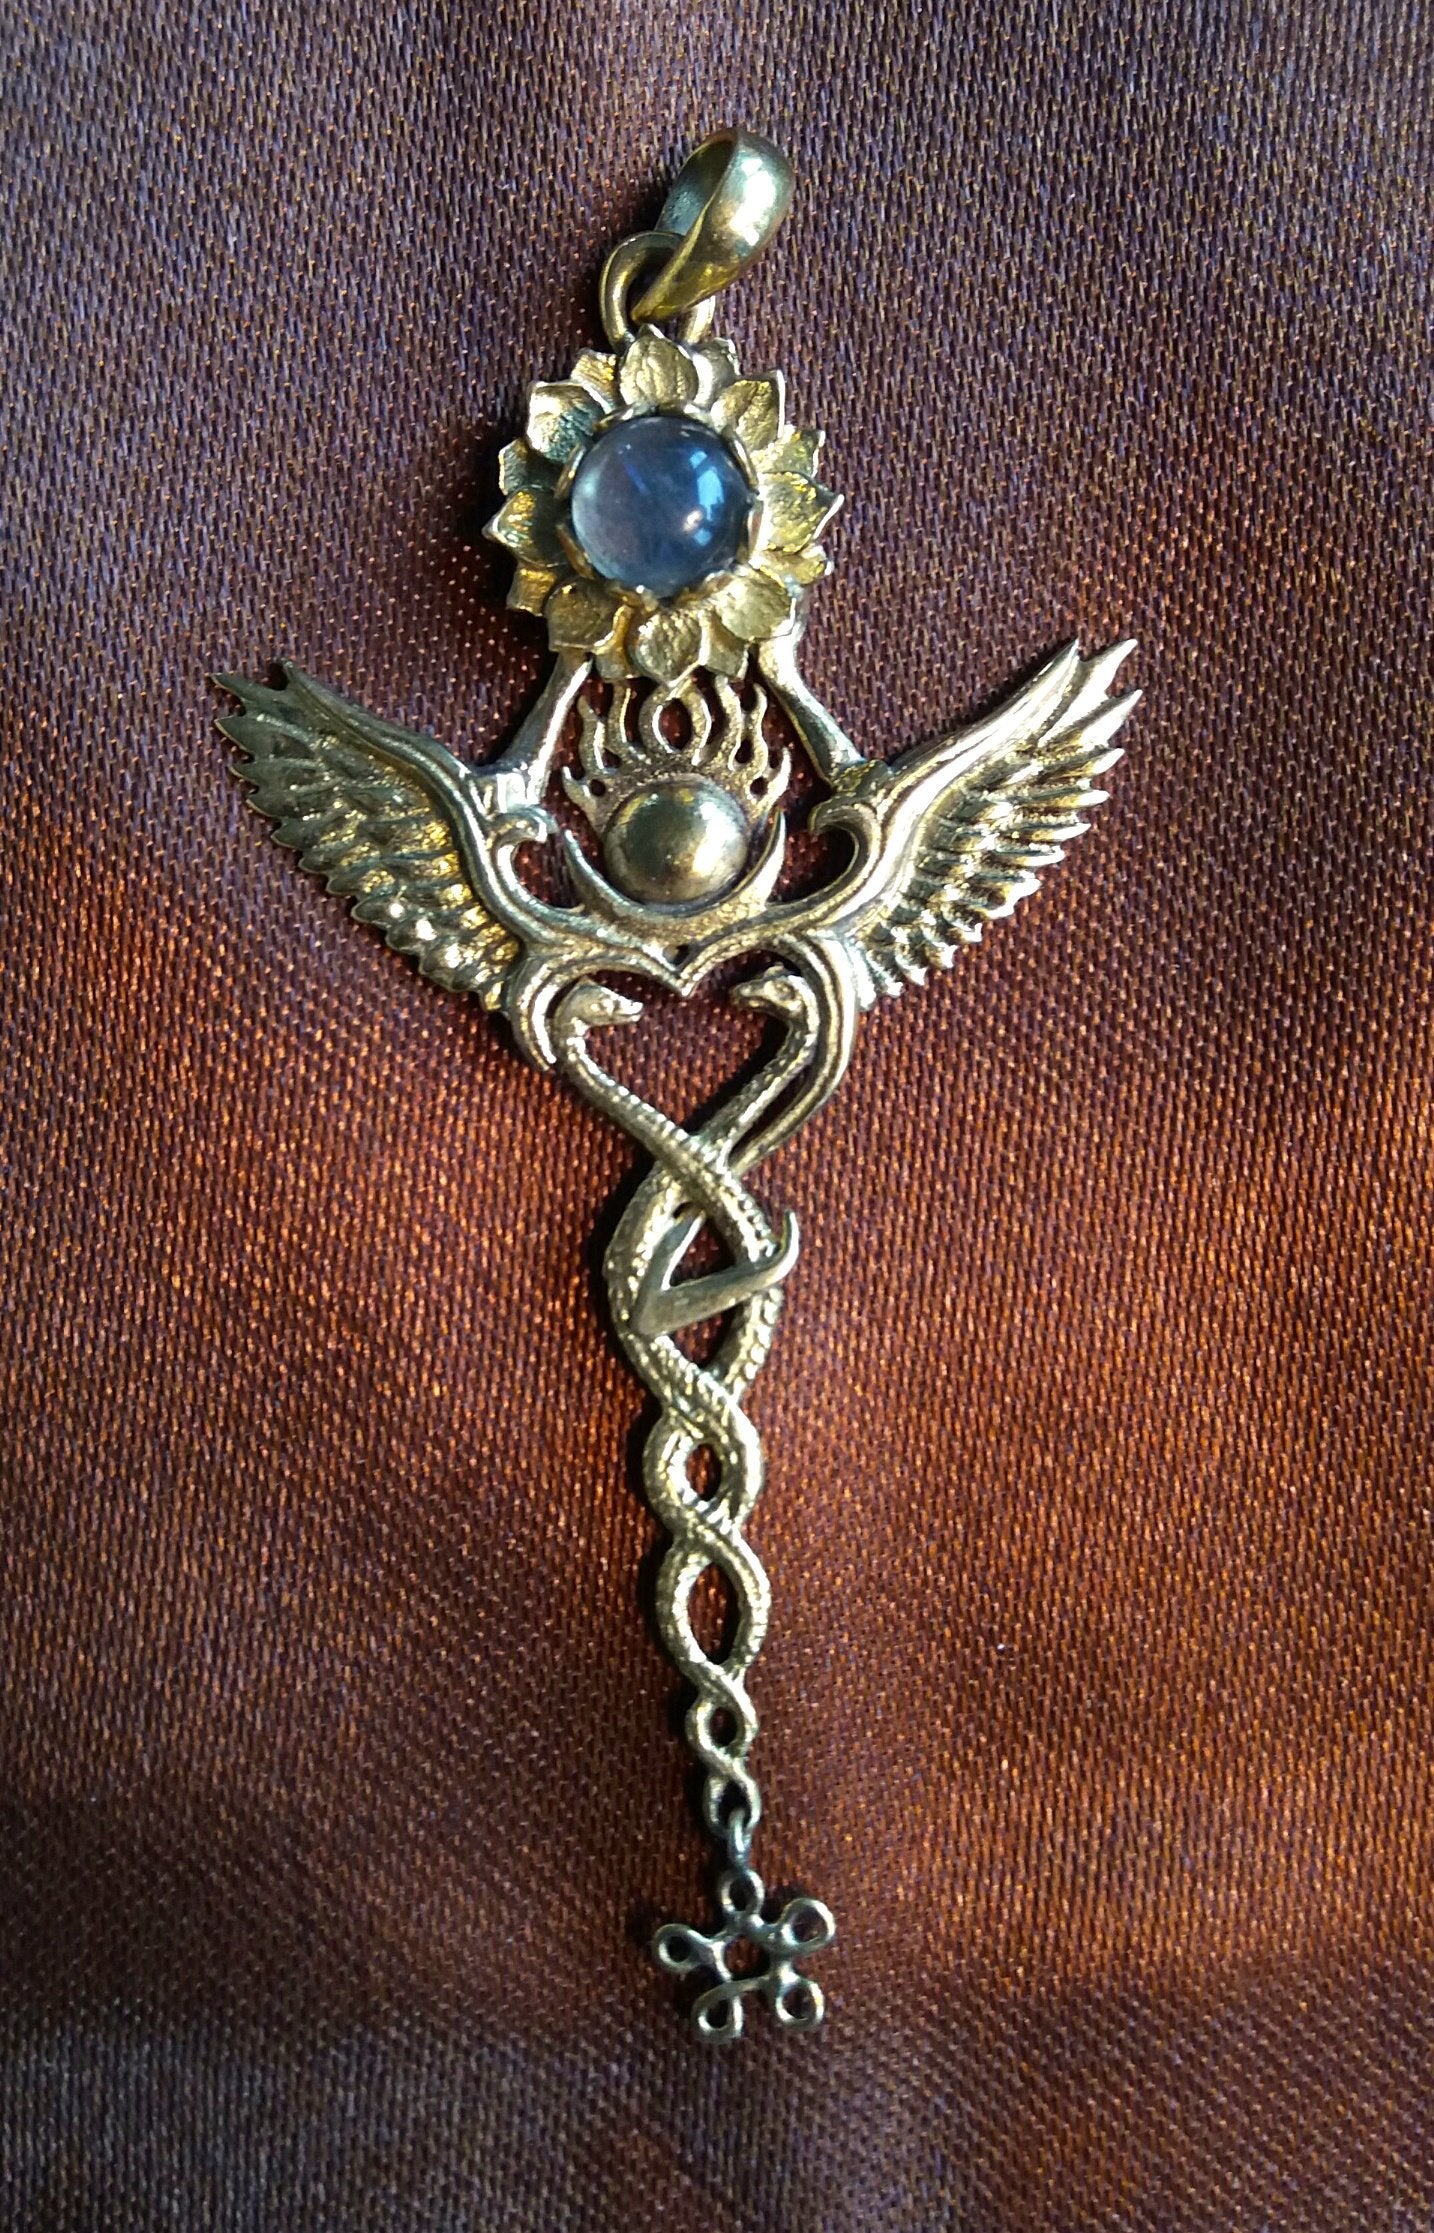 Shiva and Shakti pendant